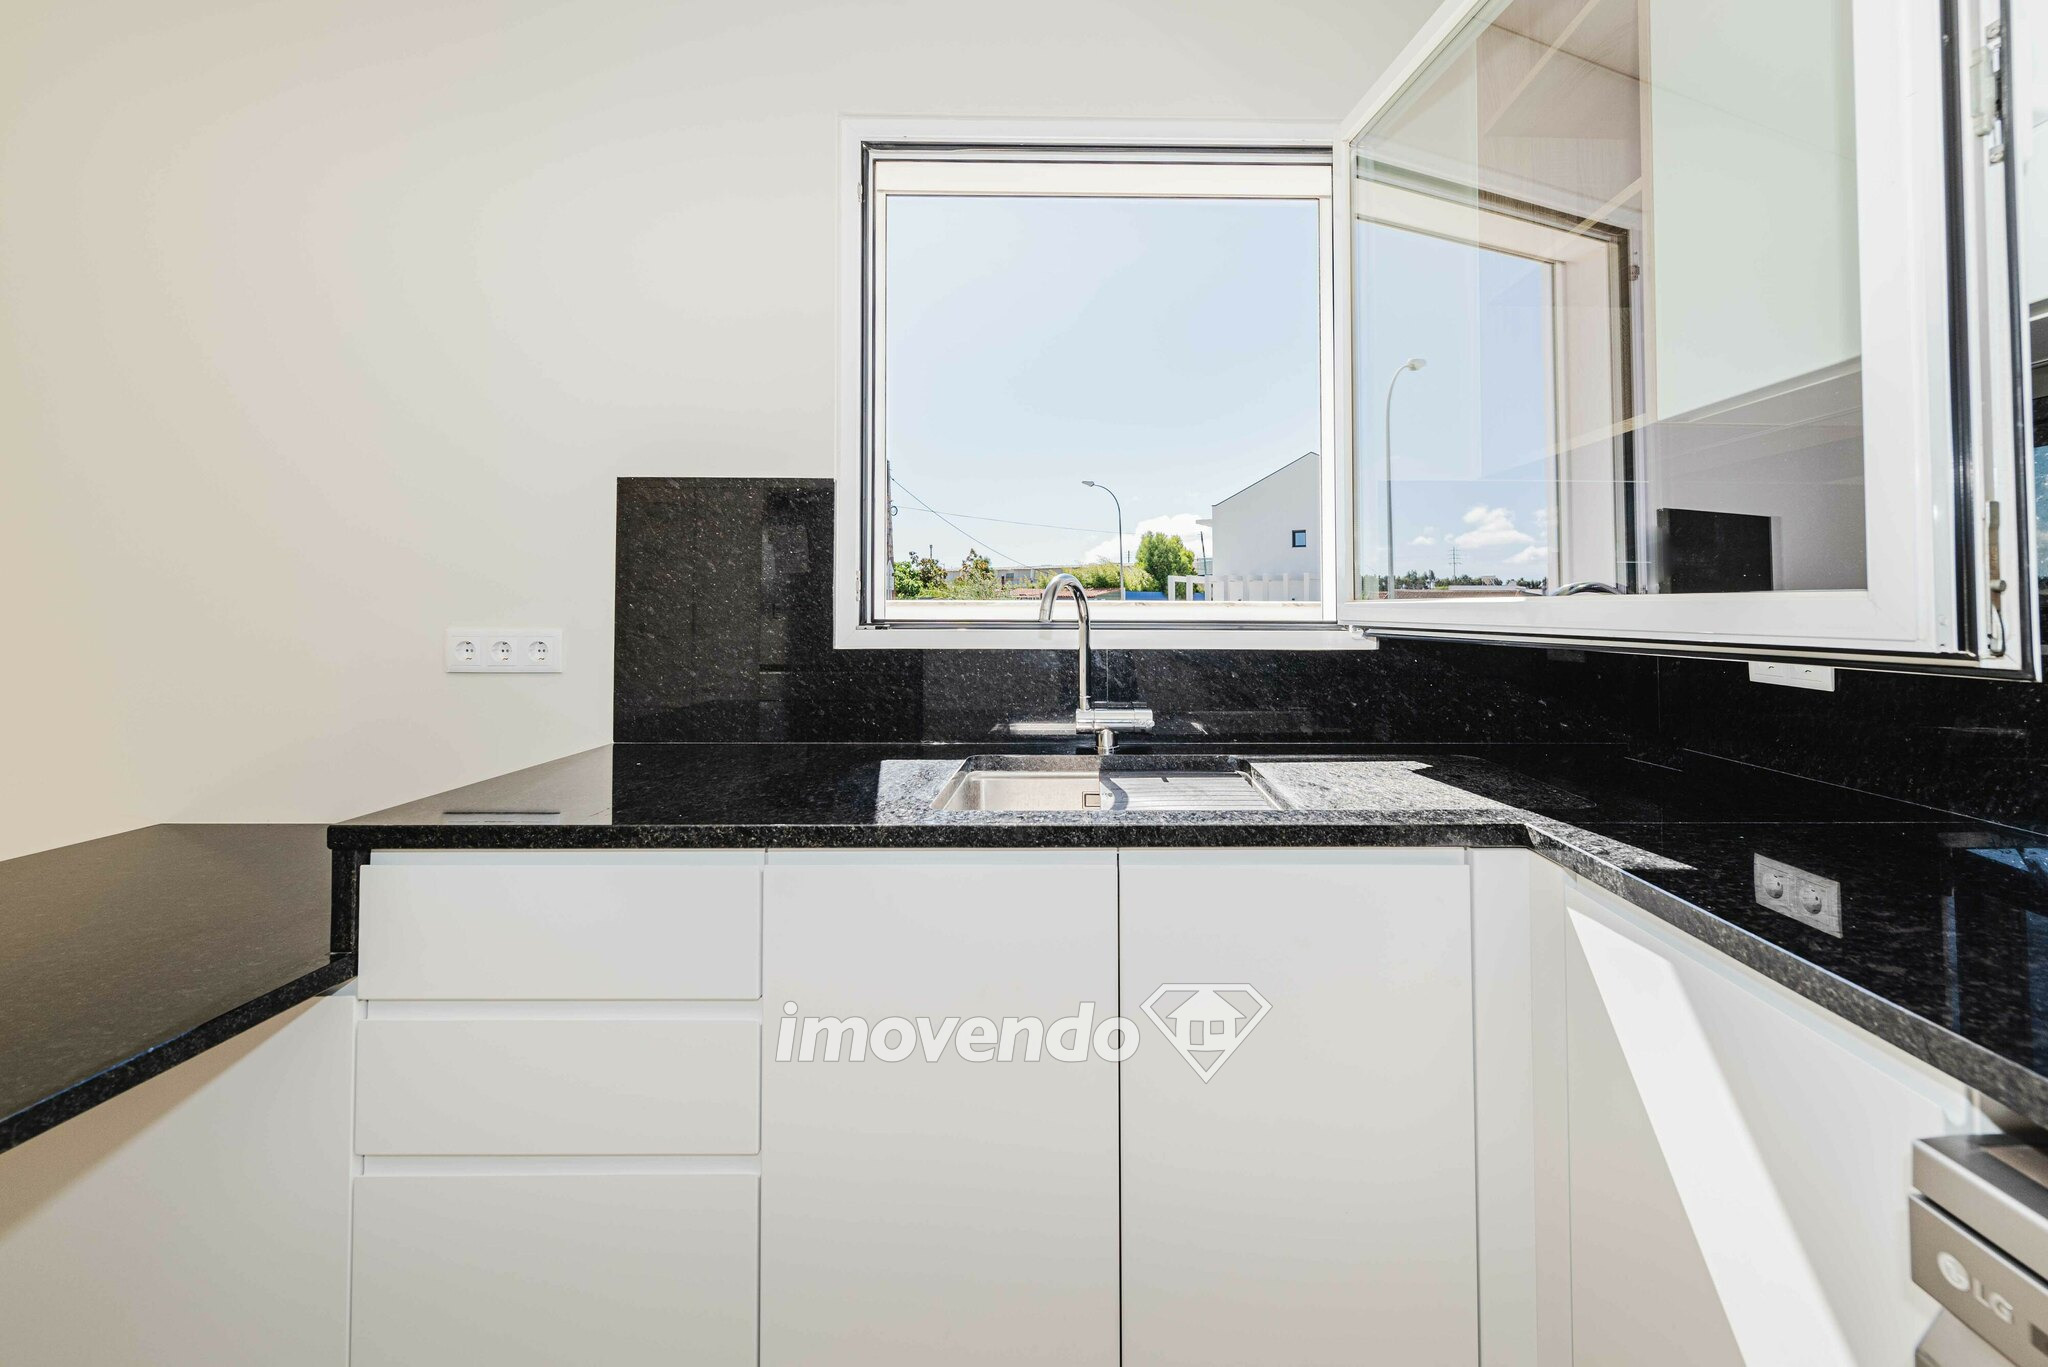 Moradia T3+1 nova, com garagem e cozinha equipada, na Abrunheira